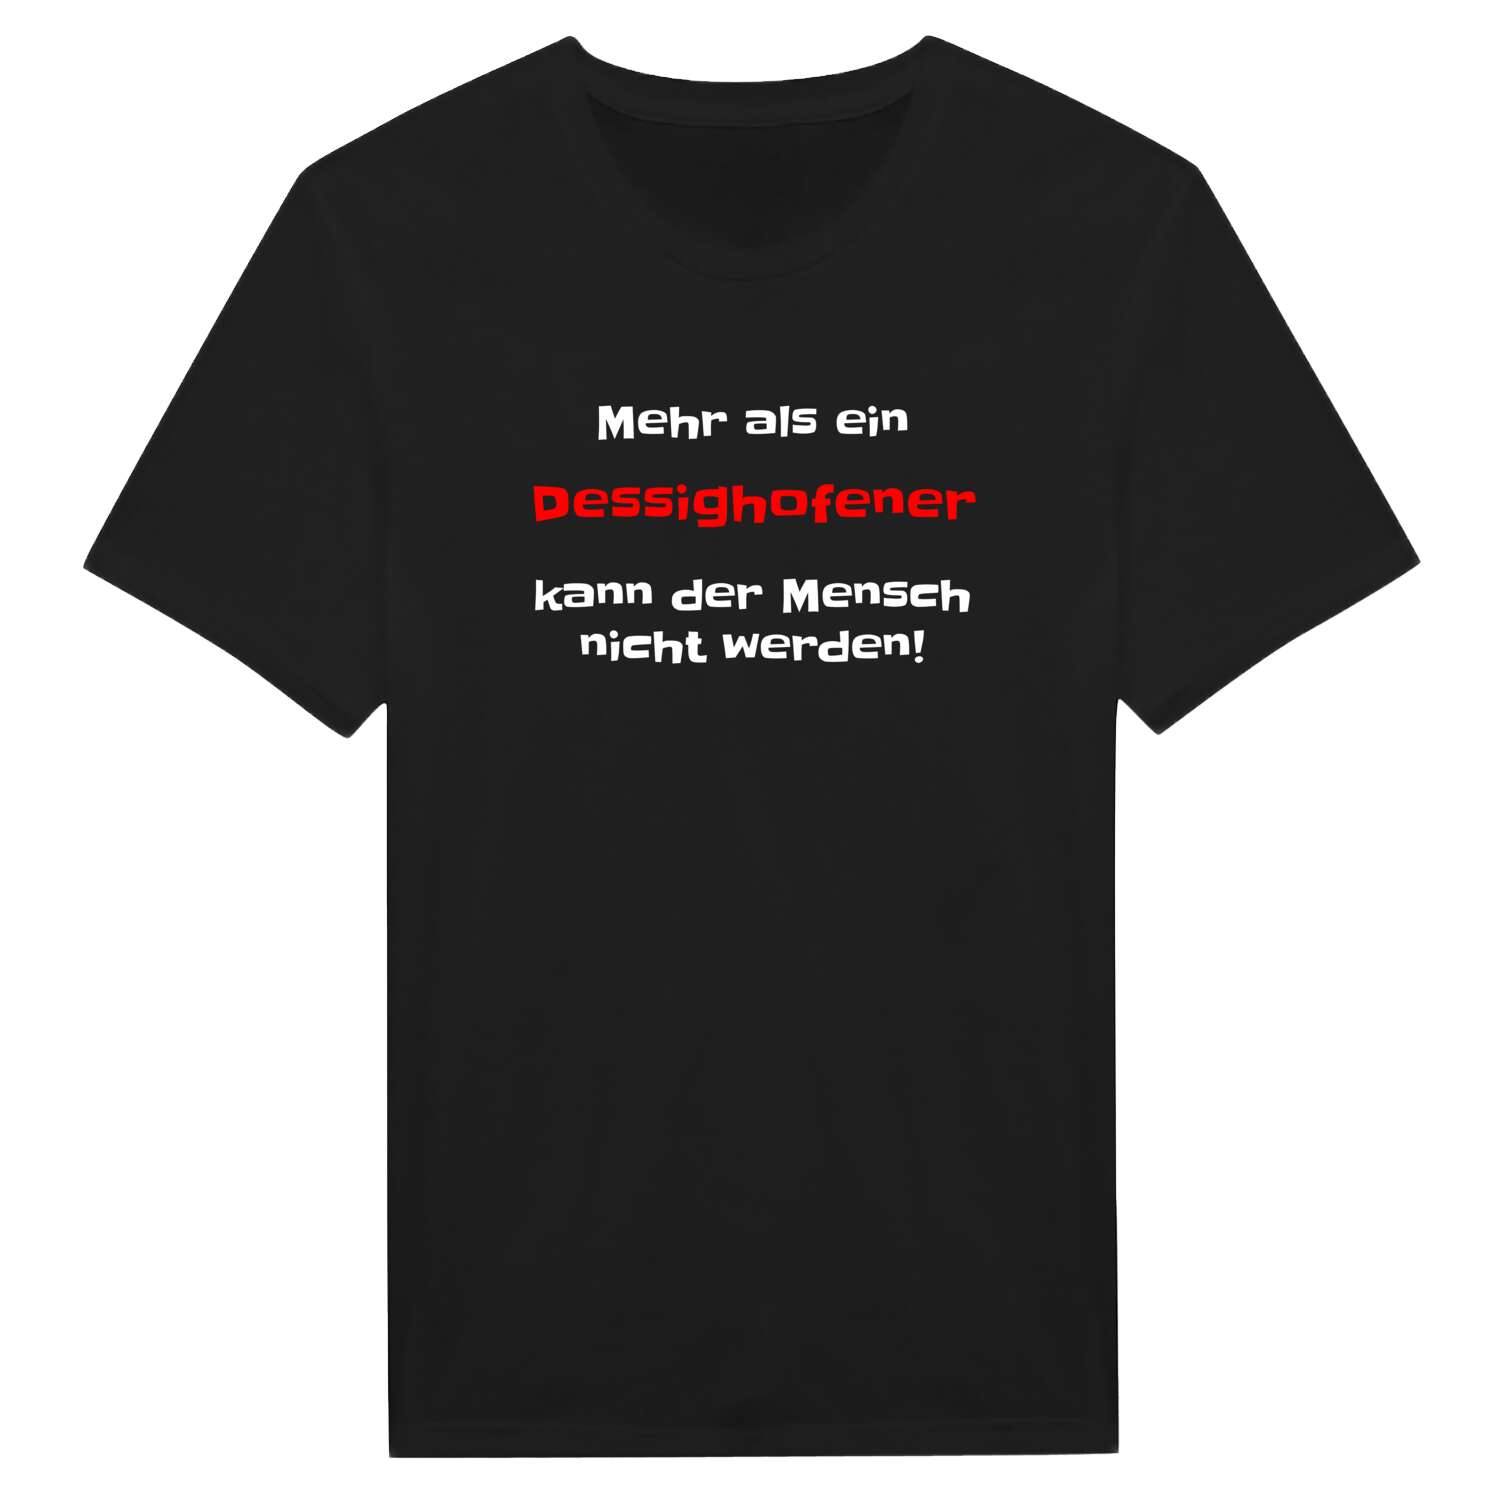 Dessighofen T-Shirt »Mehr als ein«